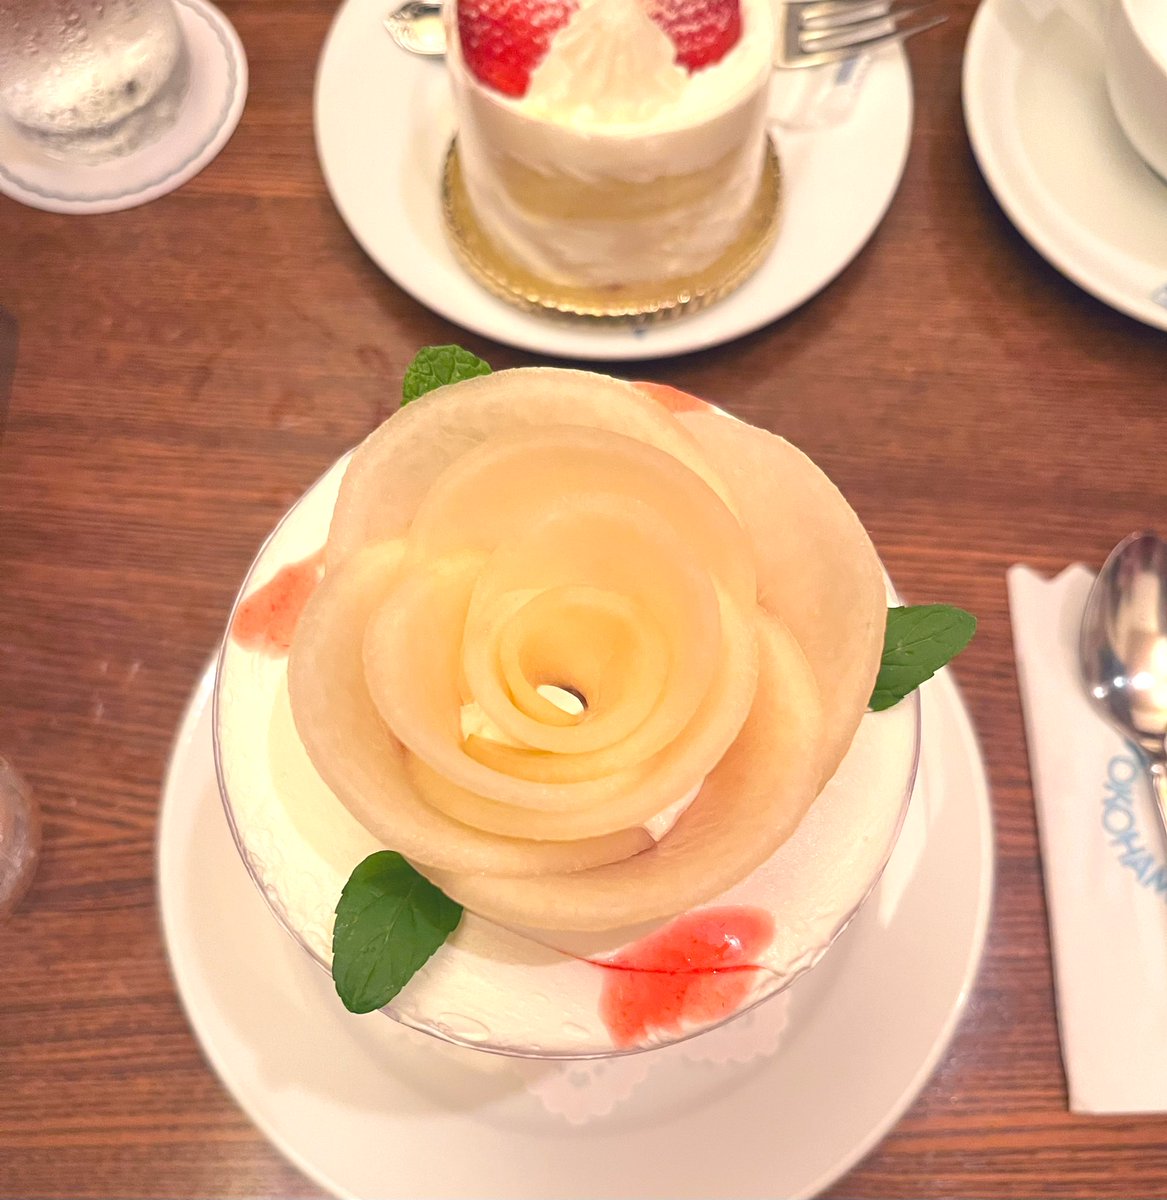 test ツイッターメディア - 横浜・馬車道十番館で。桃が薔薇の花のように飾られたパフェ可愛かったな〜。建物や内装のステンドグラスなどもとっても素敵だった。
#純喫茶コレクション https://t.co/KvNpS7lBhJ